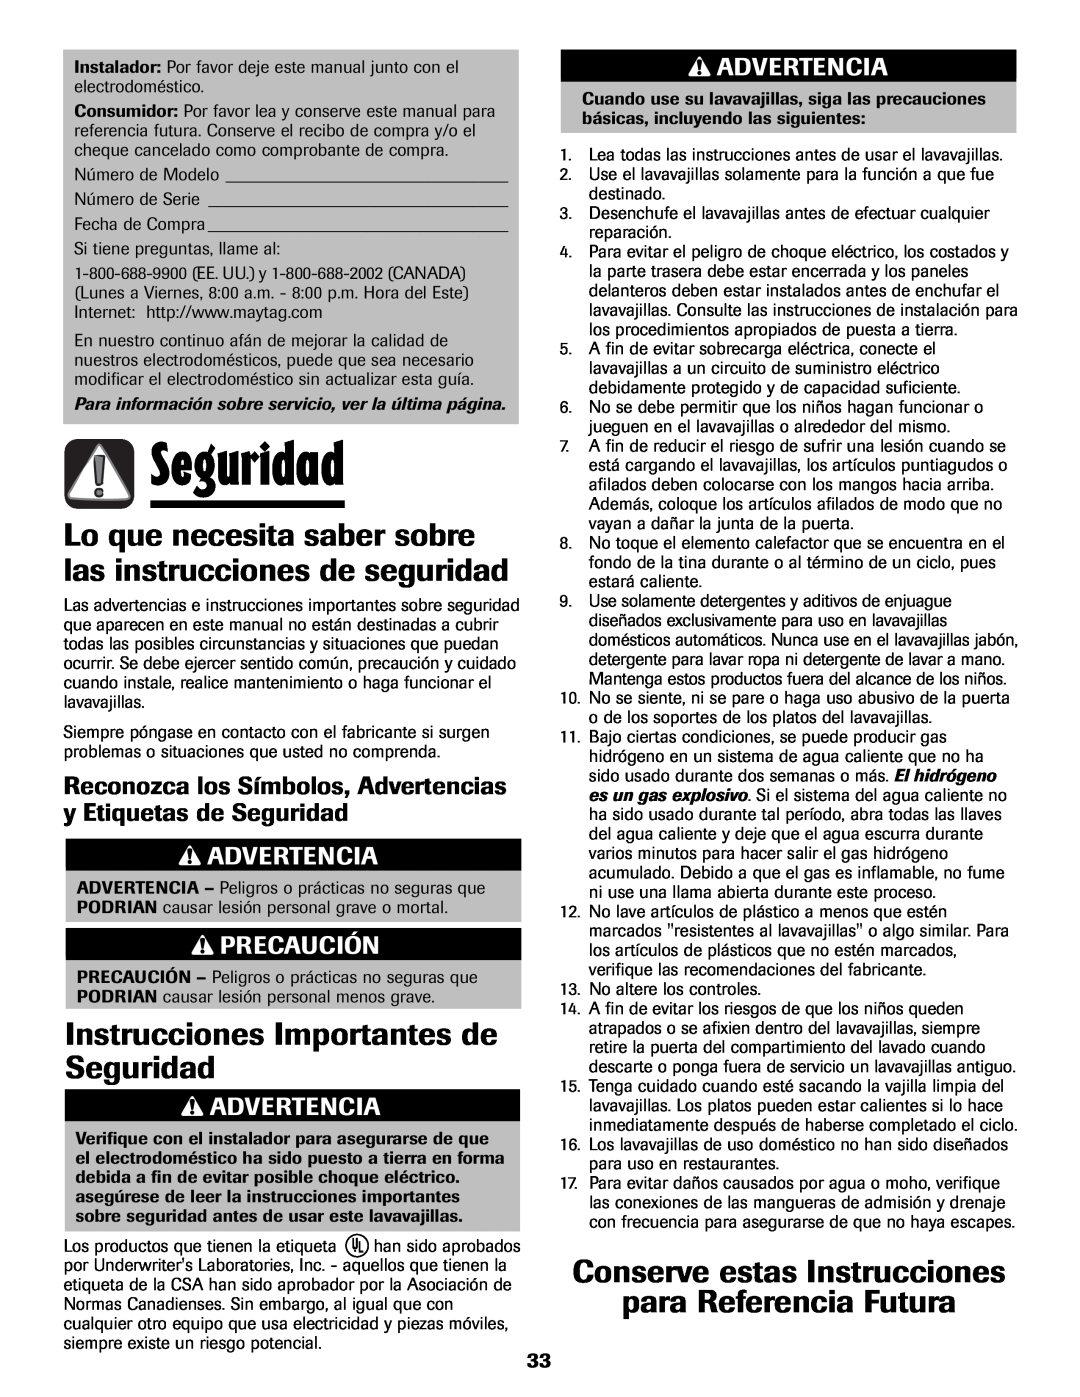 Maytag 6919559A warranty Seguridad, Lo que necesita saber sobre las instrucciones de seguridad, Advertencia, Precaución 